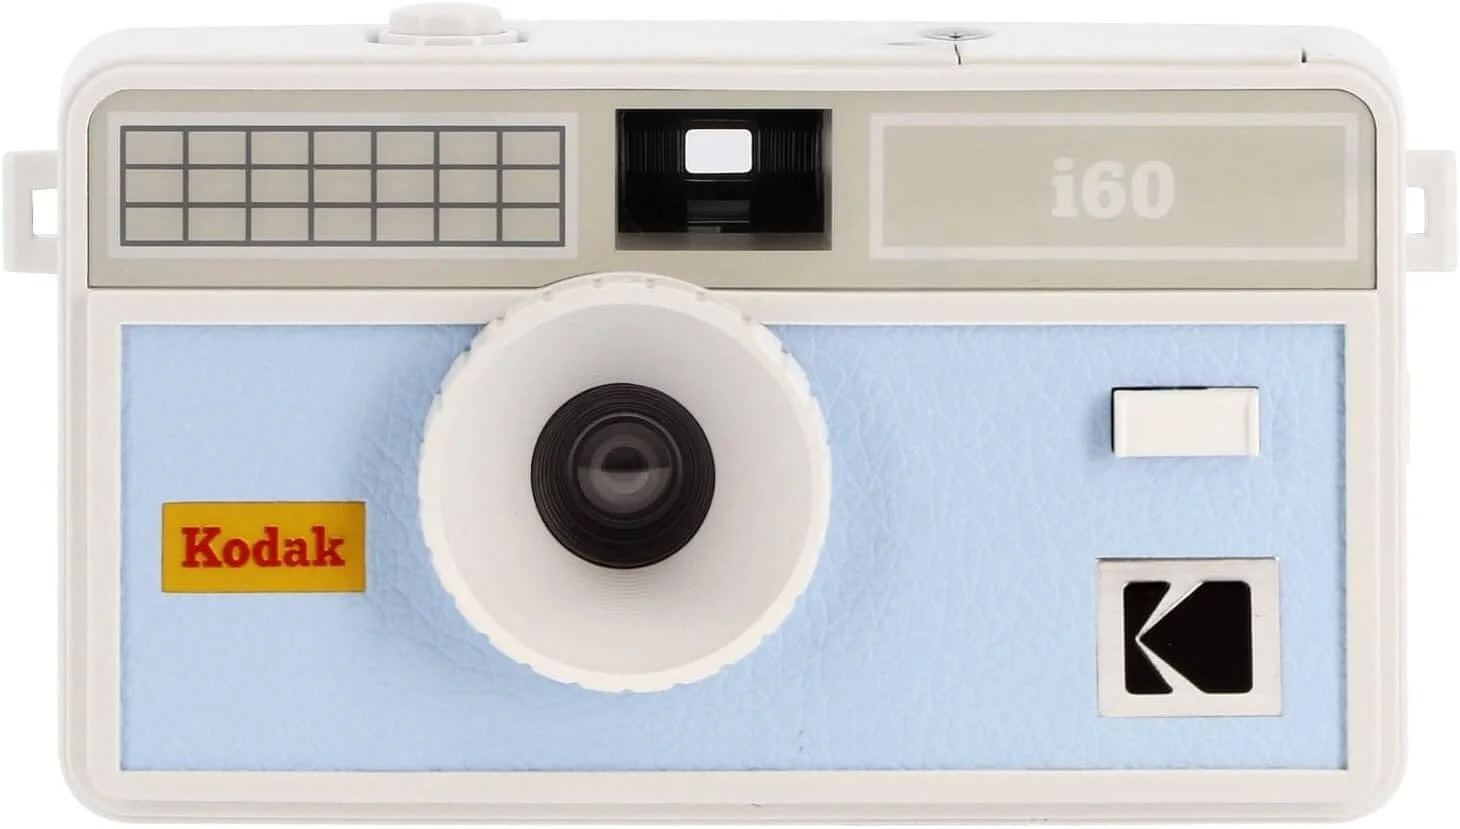 Kodak i60 Reusable